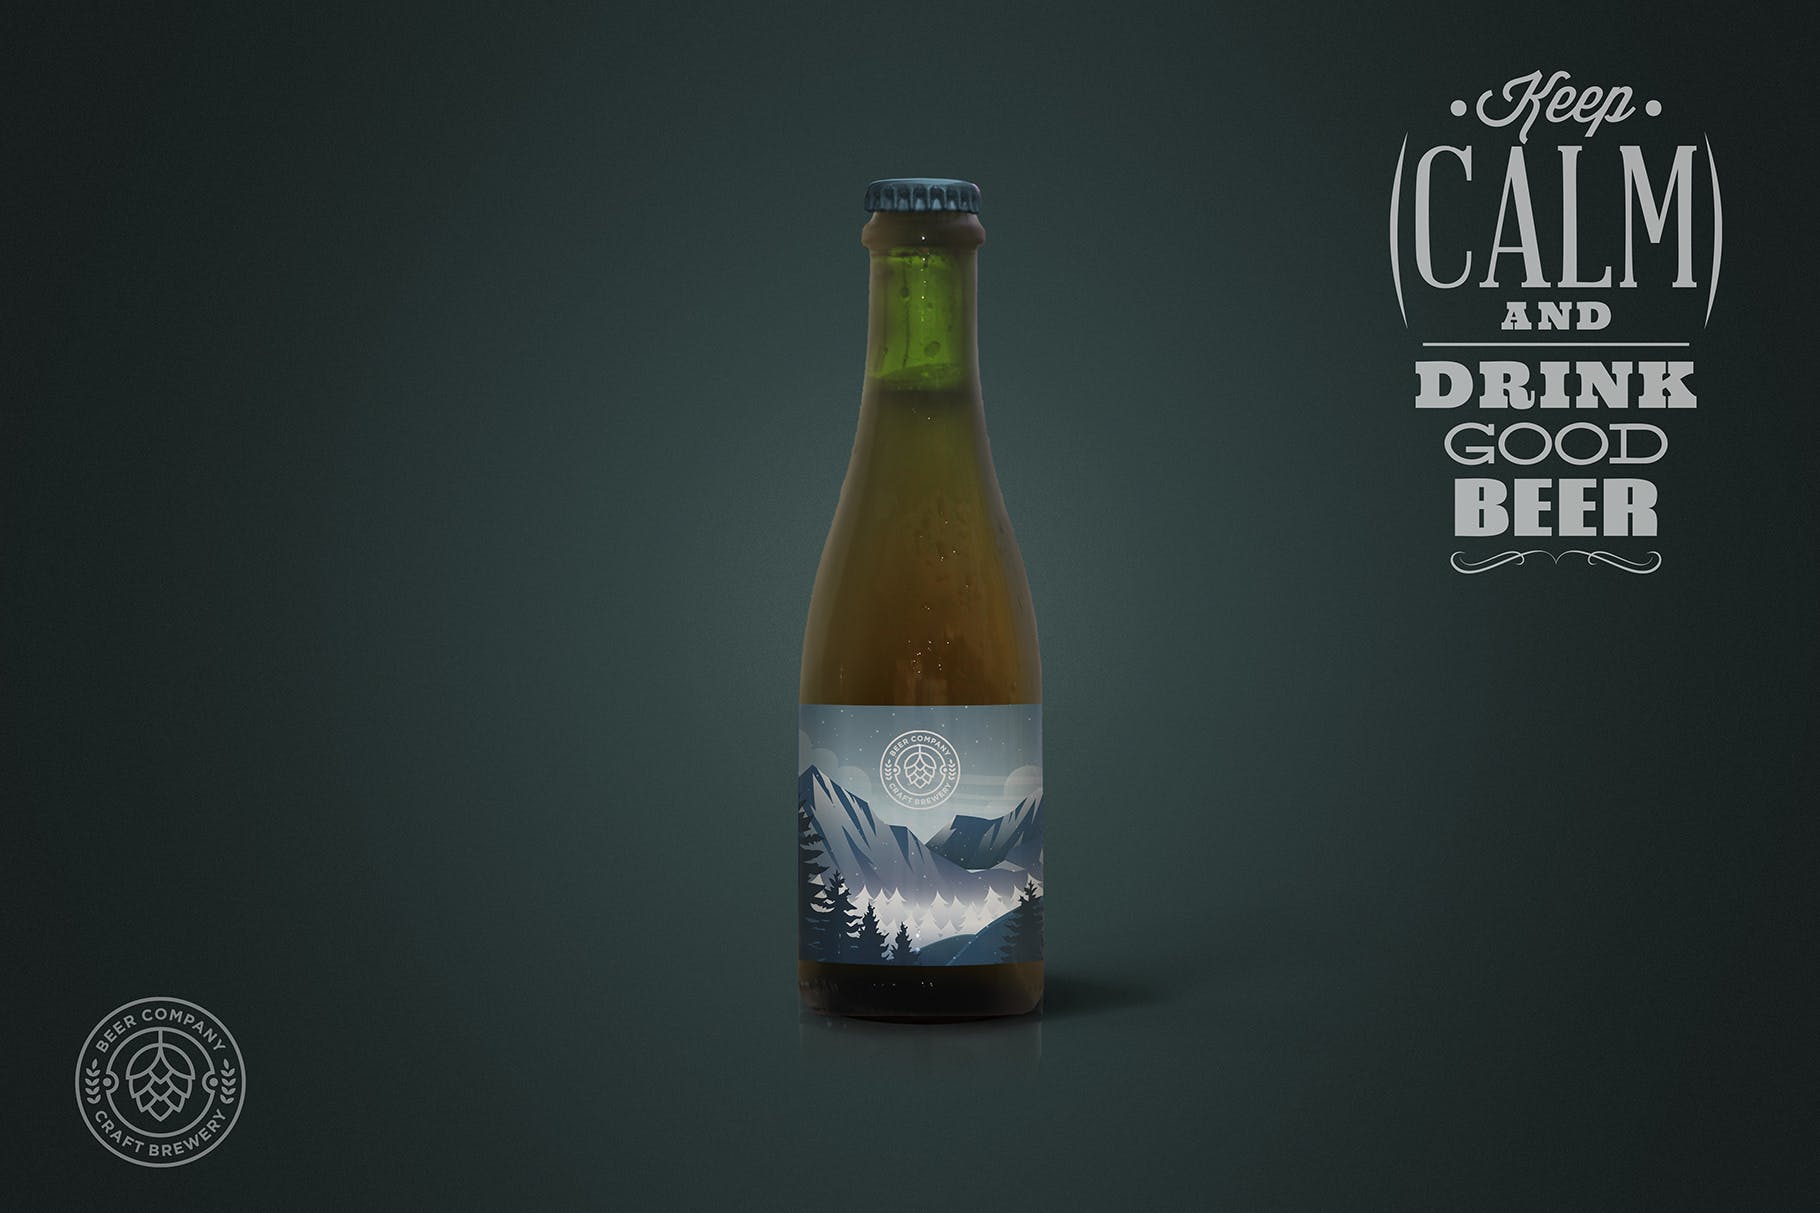 37cl棕褐色啤酒瓶外观设计图非凡图库精选模板 Clean 37cl Tan Beer Mockup插图(2)